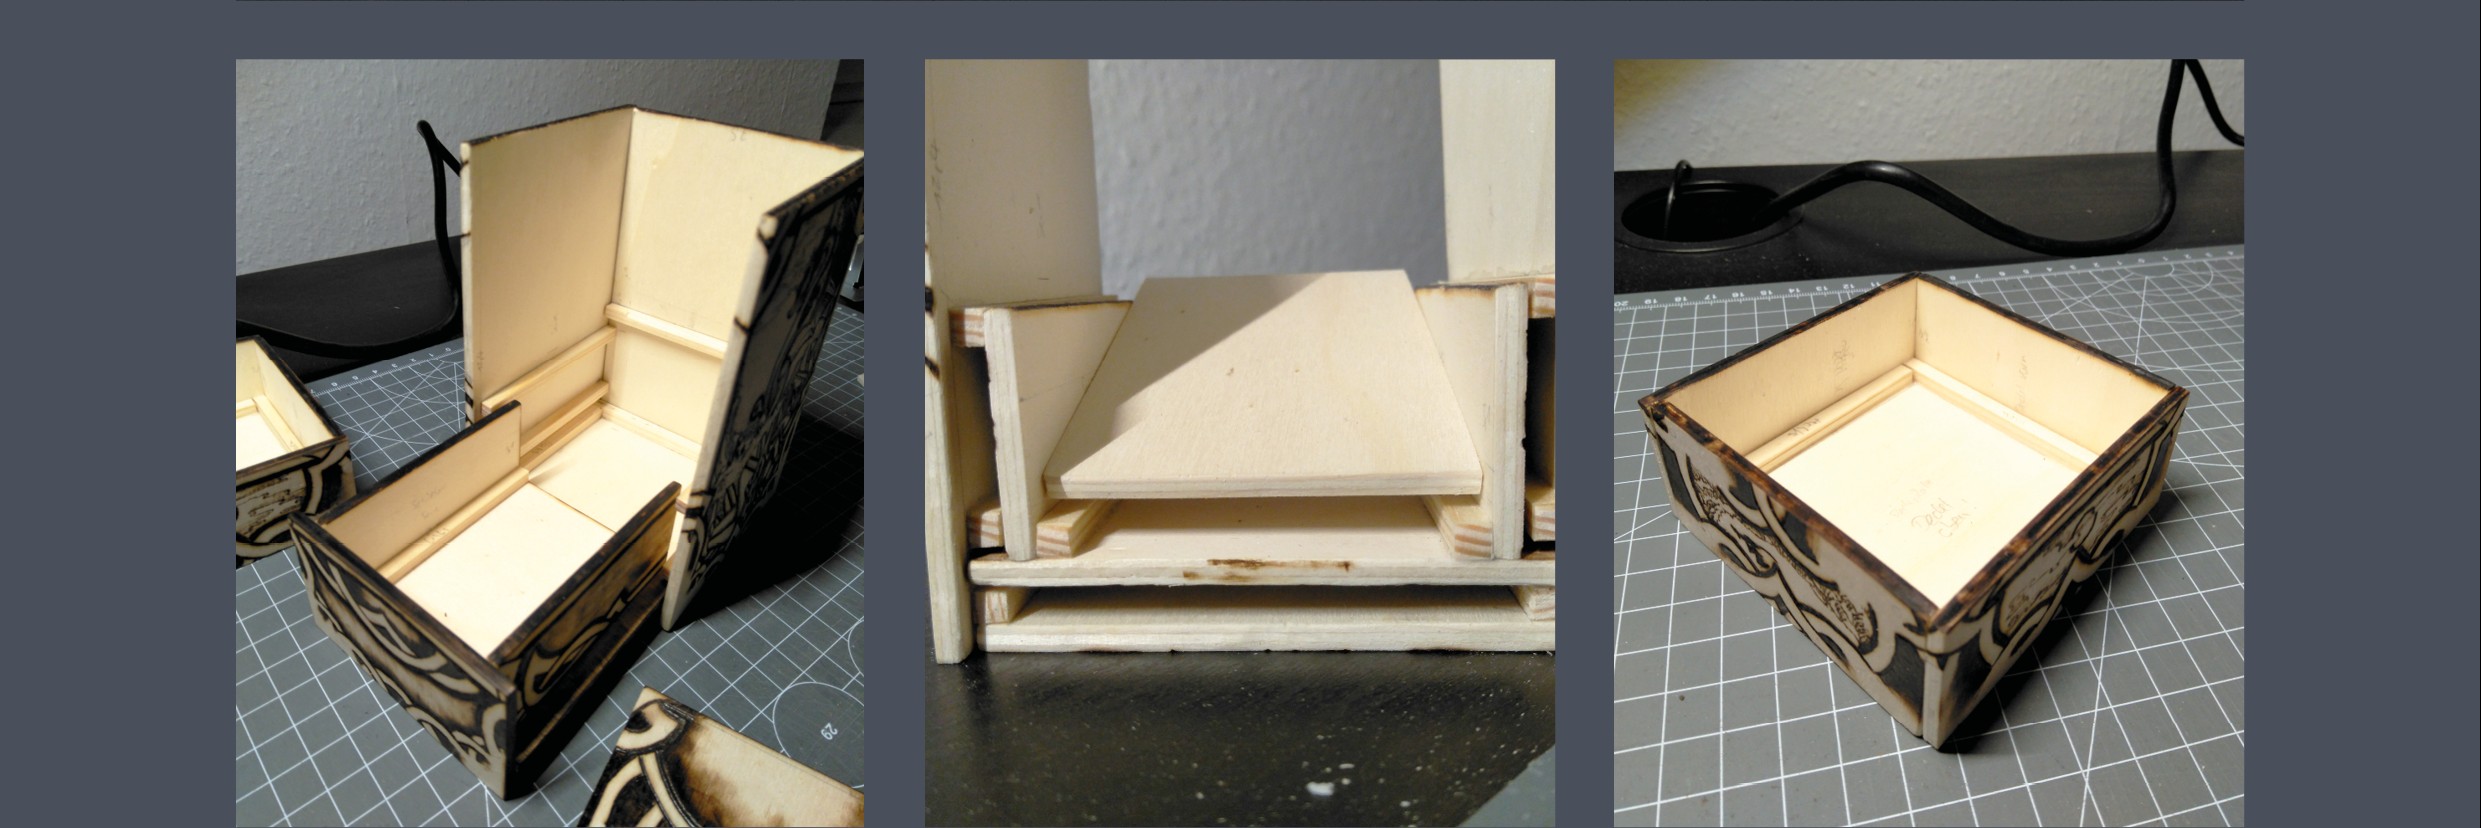 Würfelbox Zusammenbau Schublade, Deckel und Box